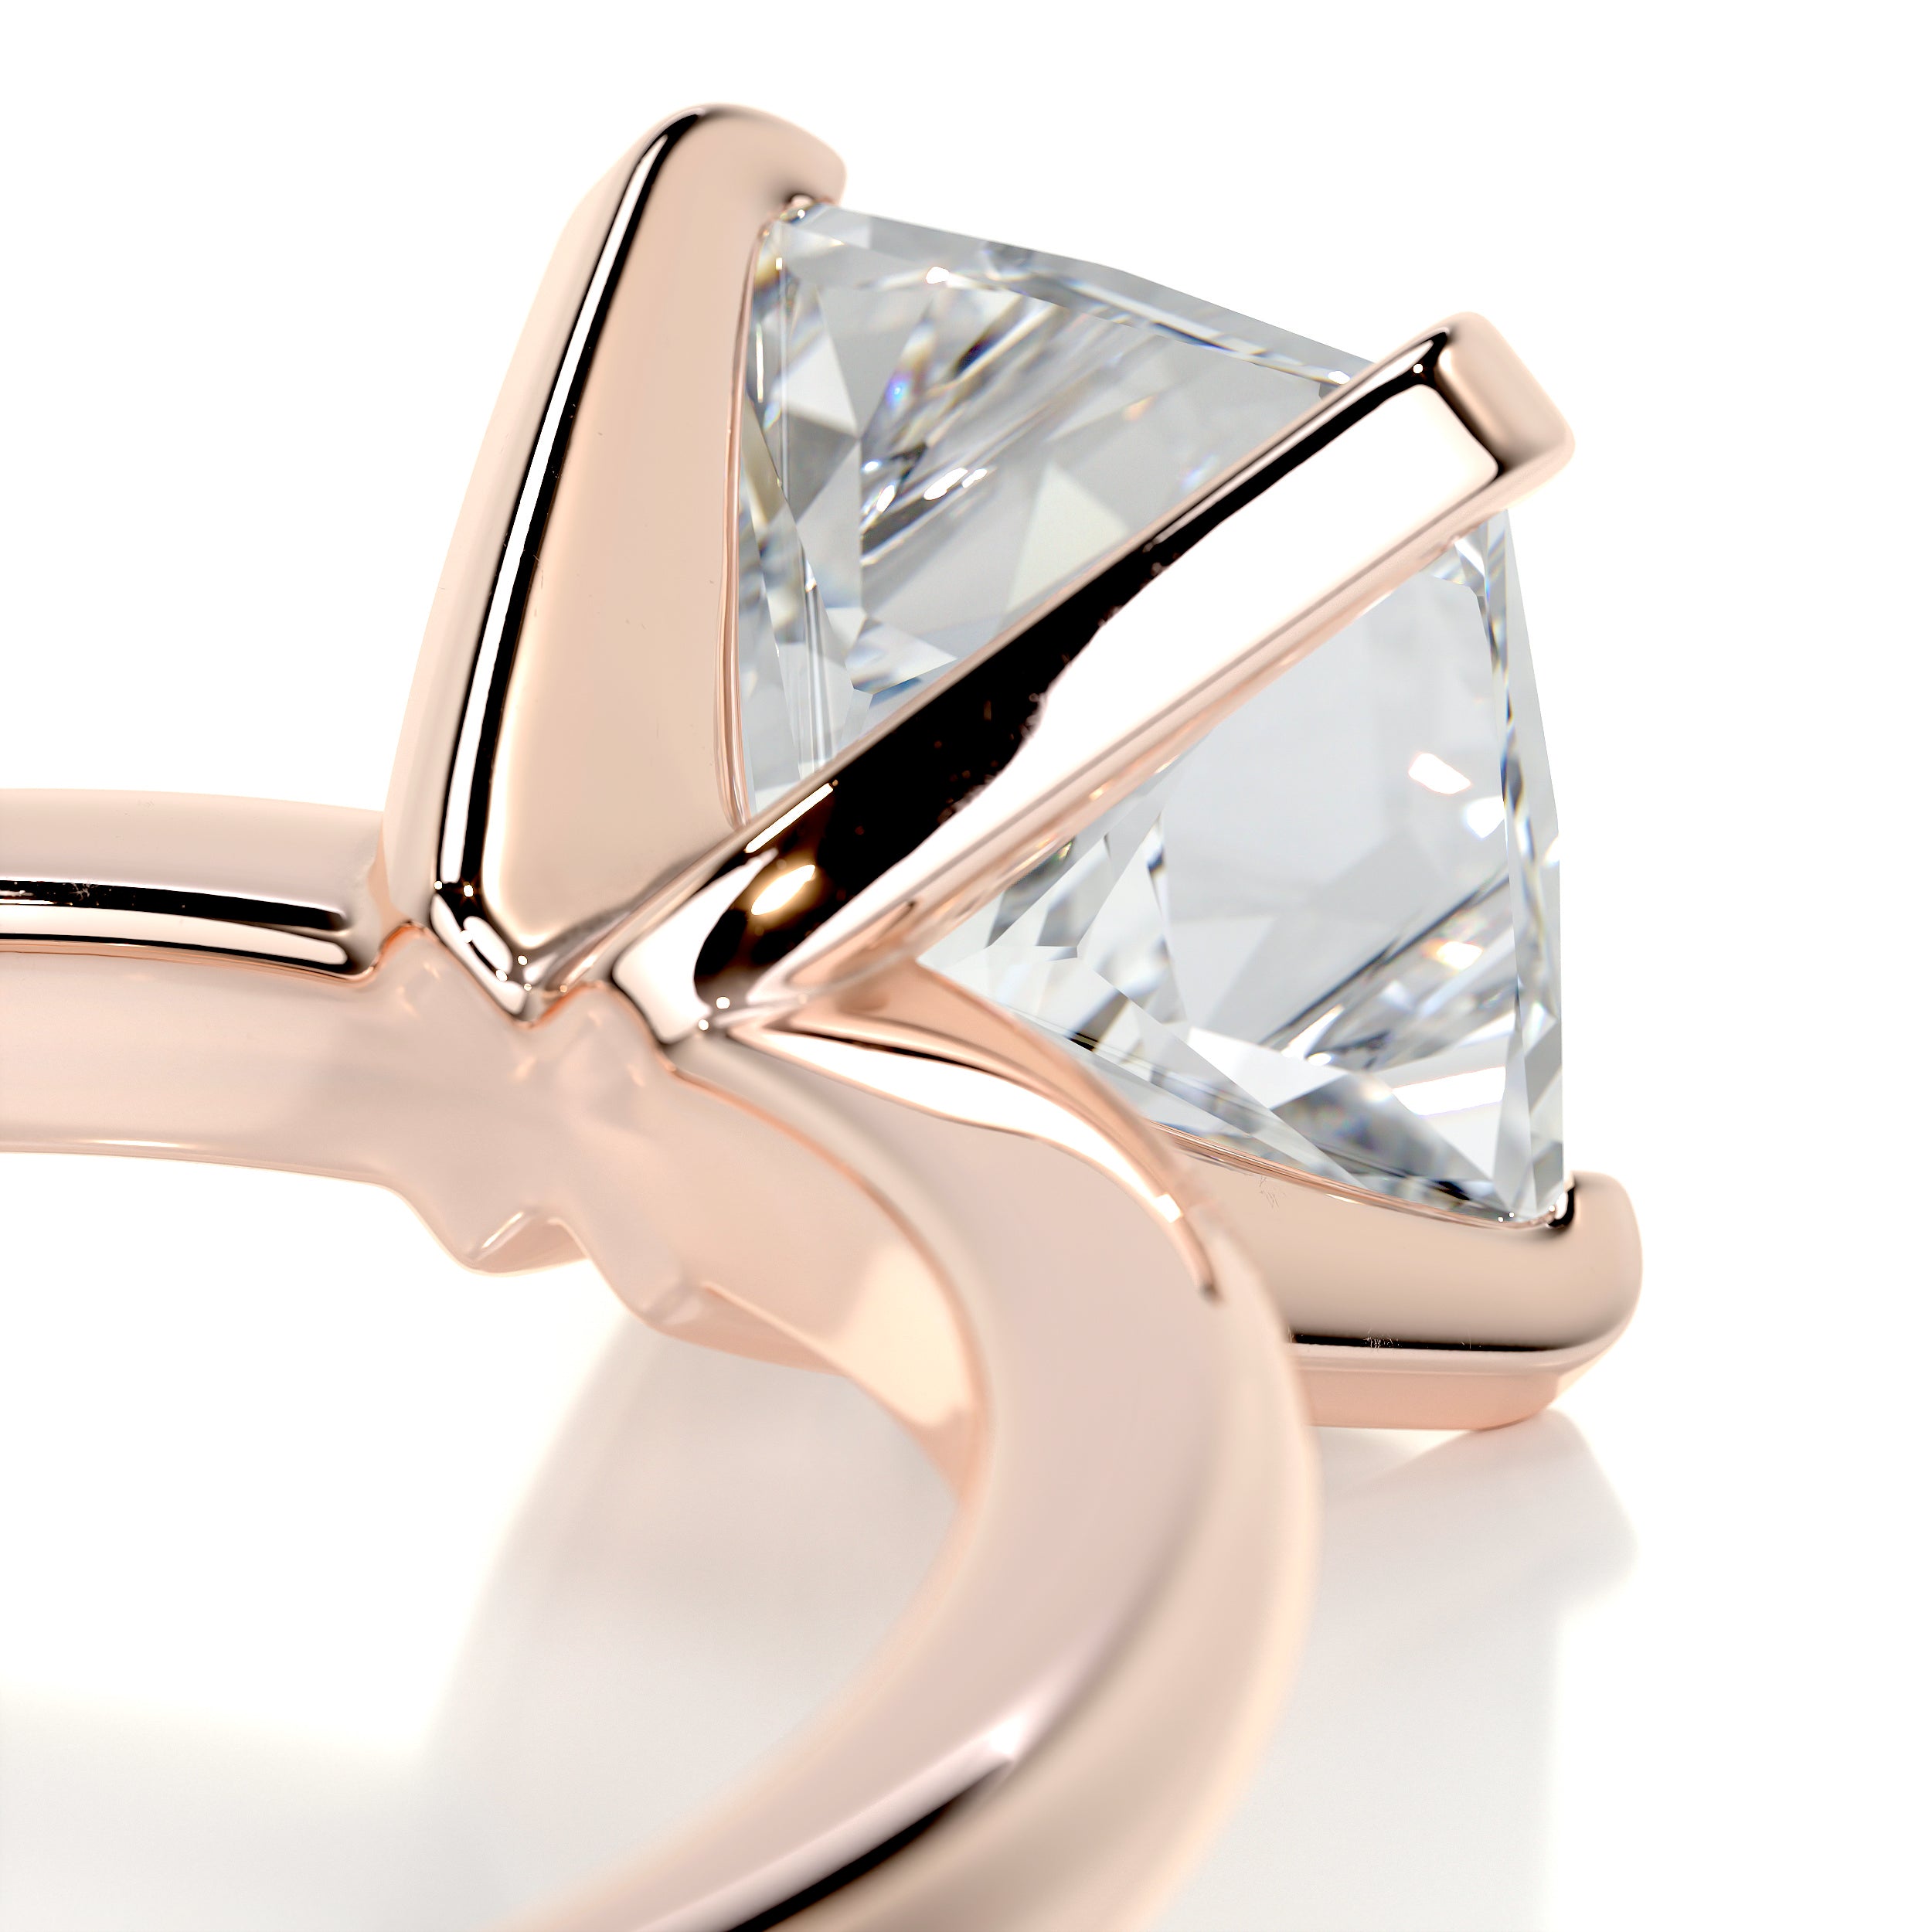 Isabelle Diamond Engagement Ring   (2 Carat) -14K Rose Gold